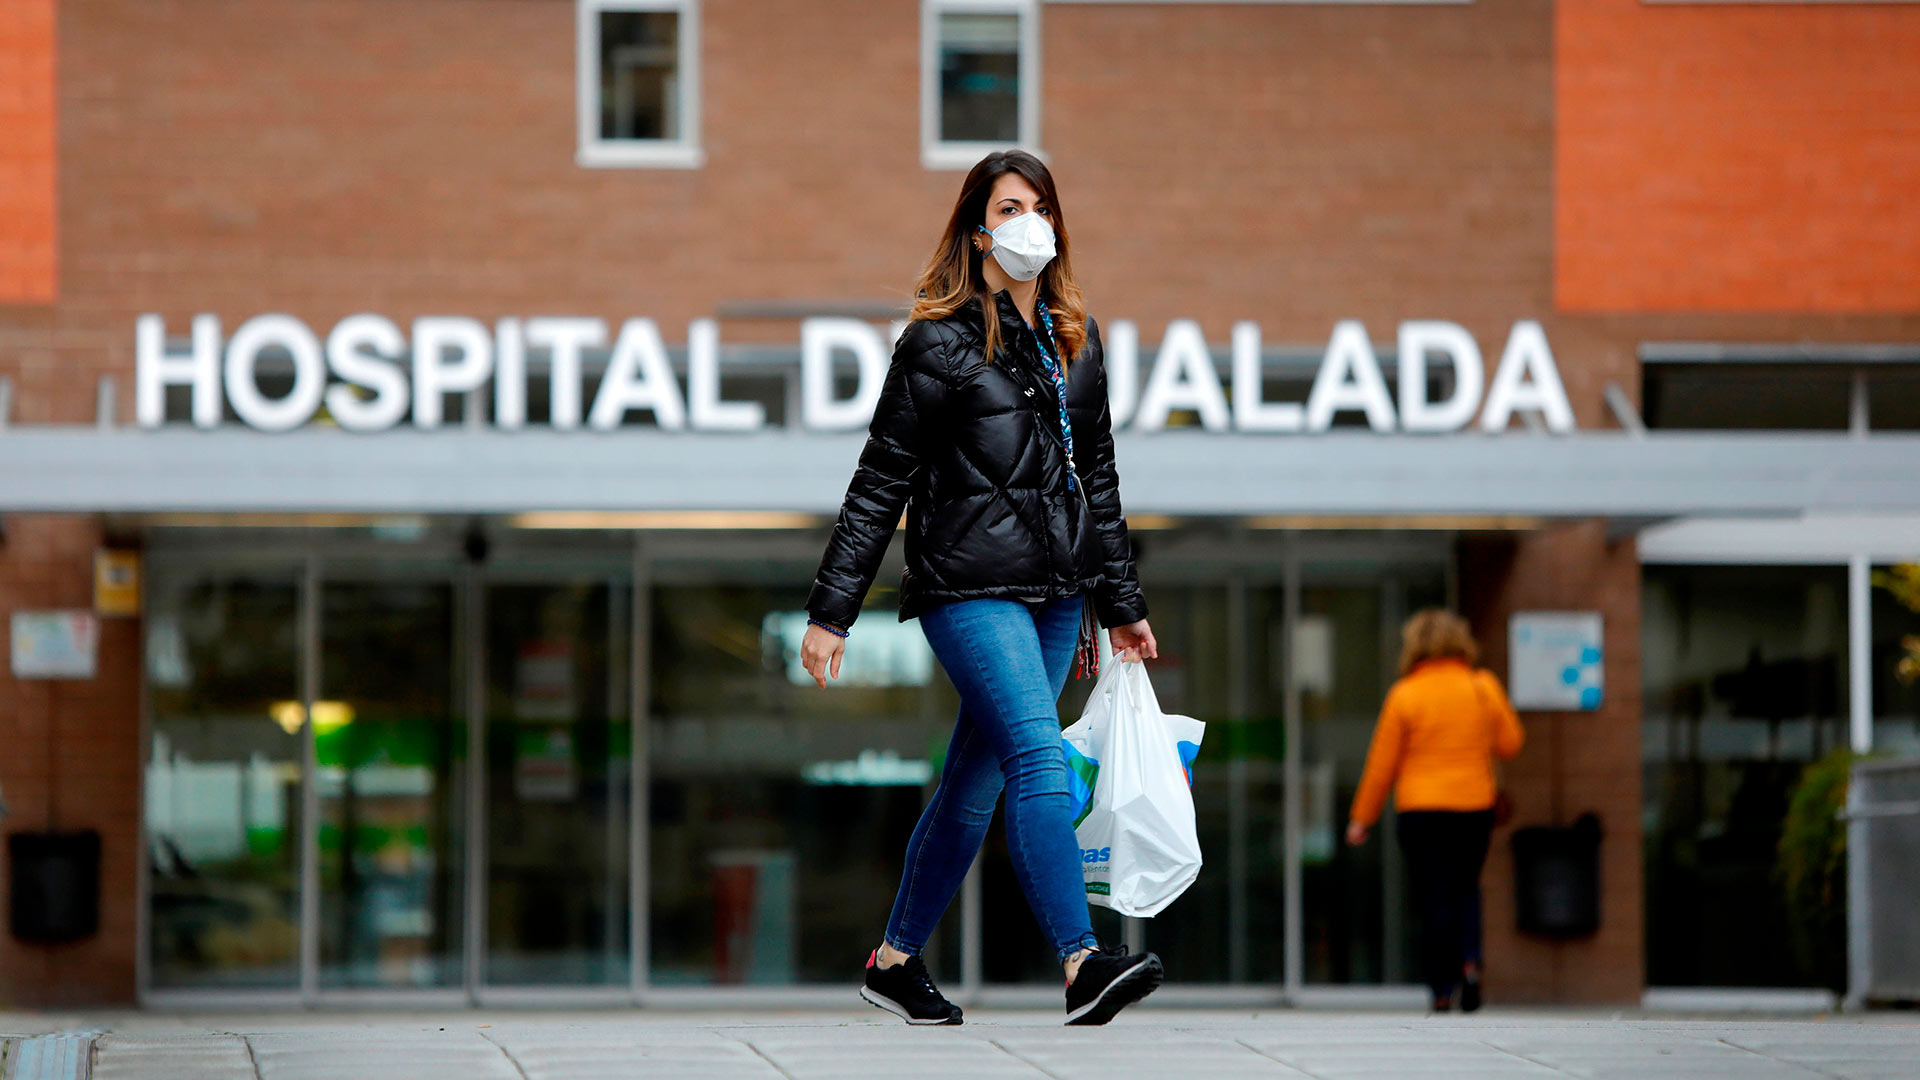 Directo | Cataluña supera a Madrid como la comunidad con más casos nuevos de coronavirus: 1.939 frente a 1.777 casos